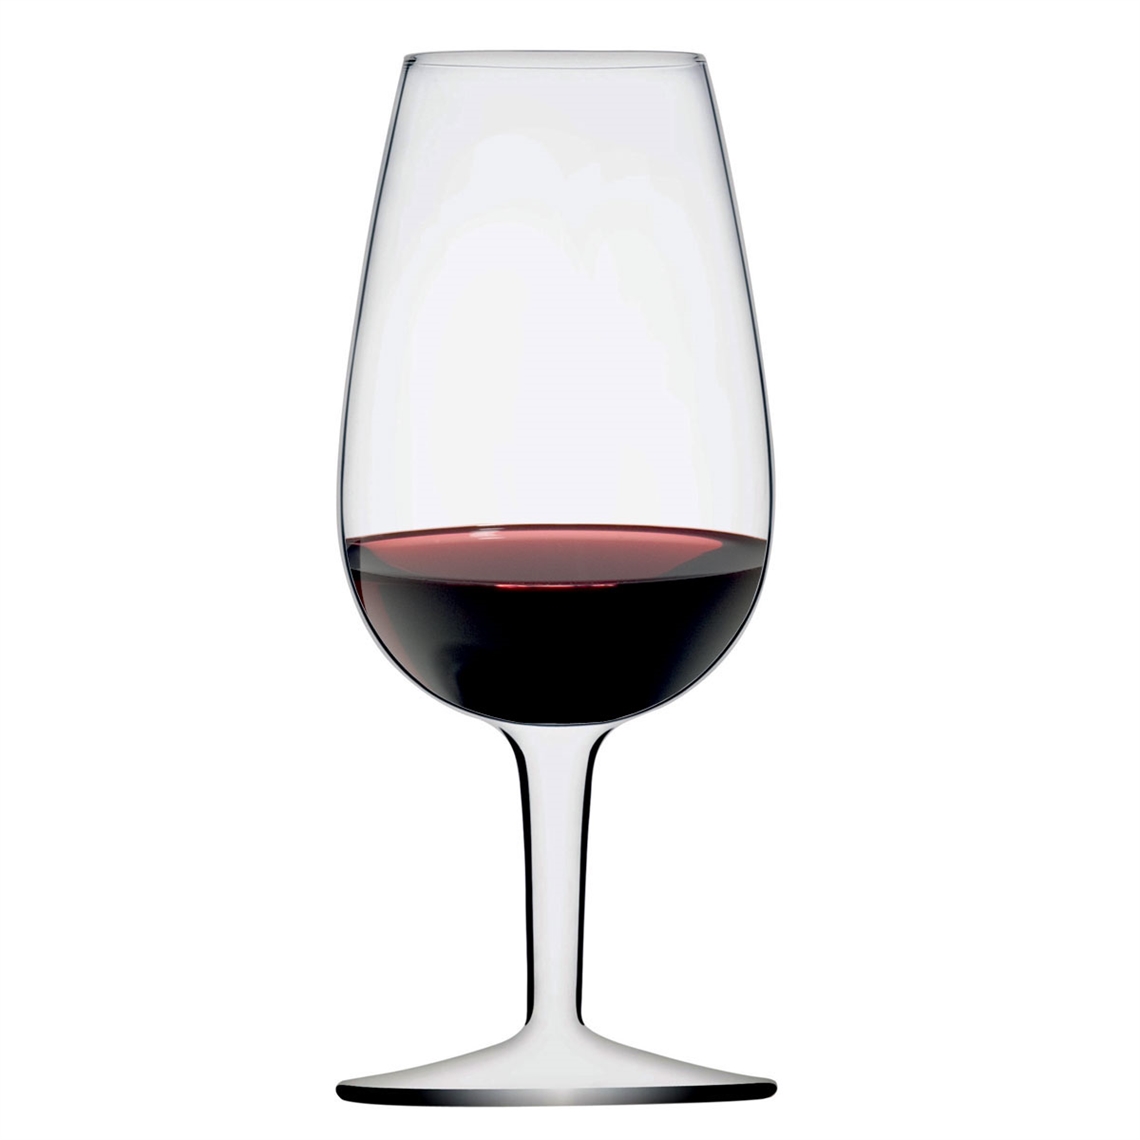 What makes ISO wine tasting glasses so popular?